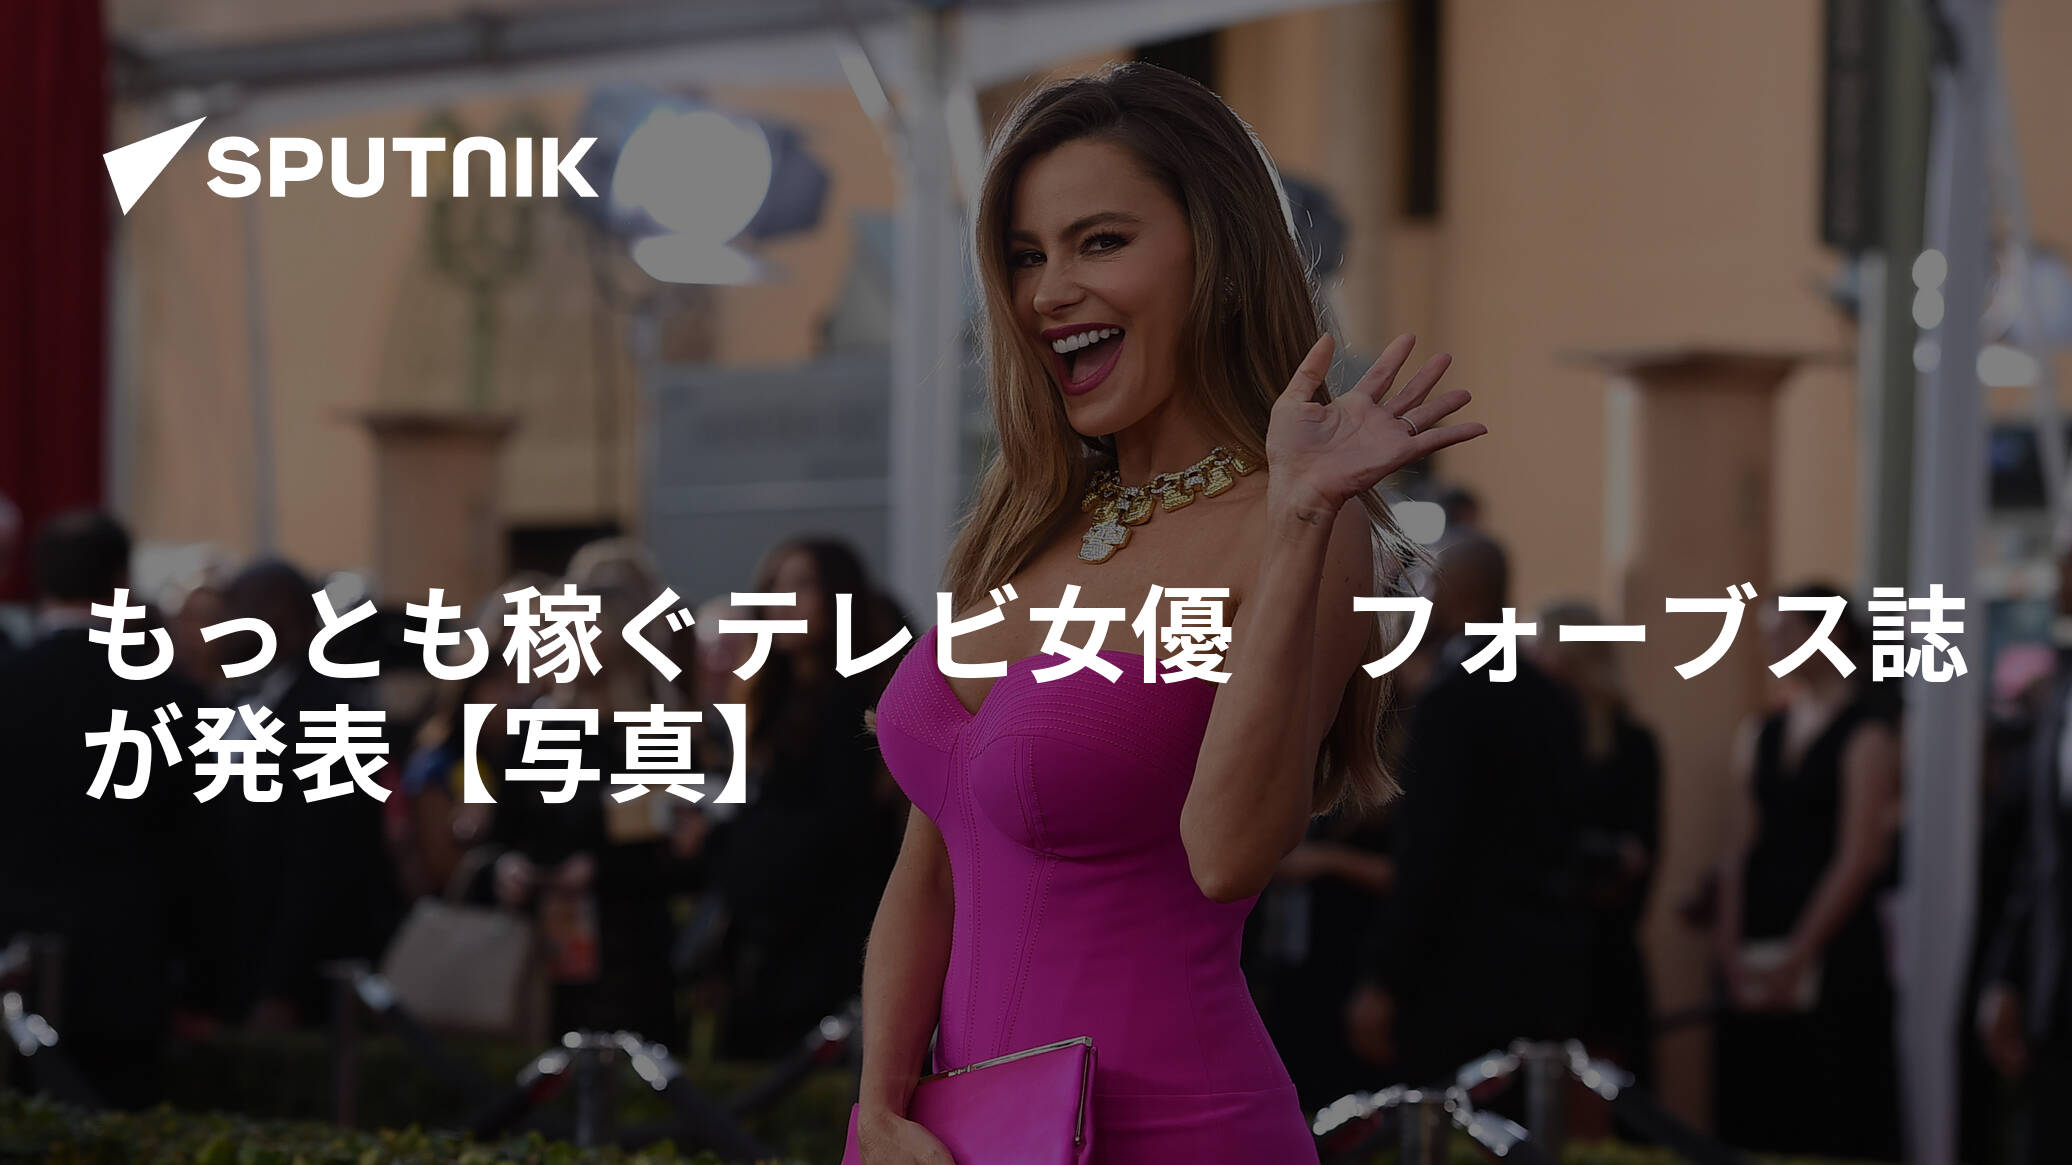 もっとも稼ぐテレビ女優 フォーブス誌が発表【写真】 2018年10月29日 Sputnik 日本 